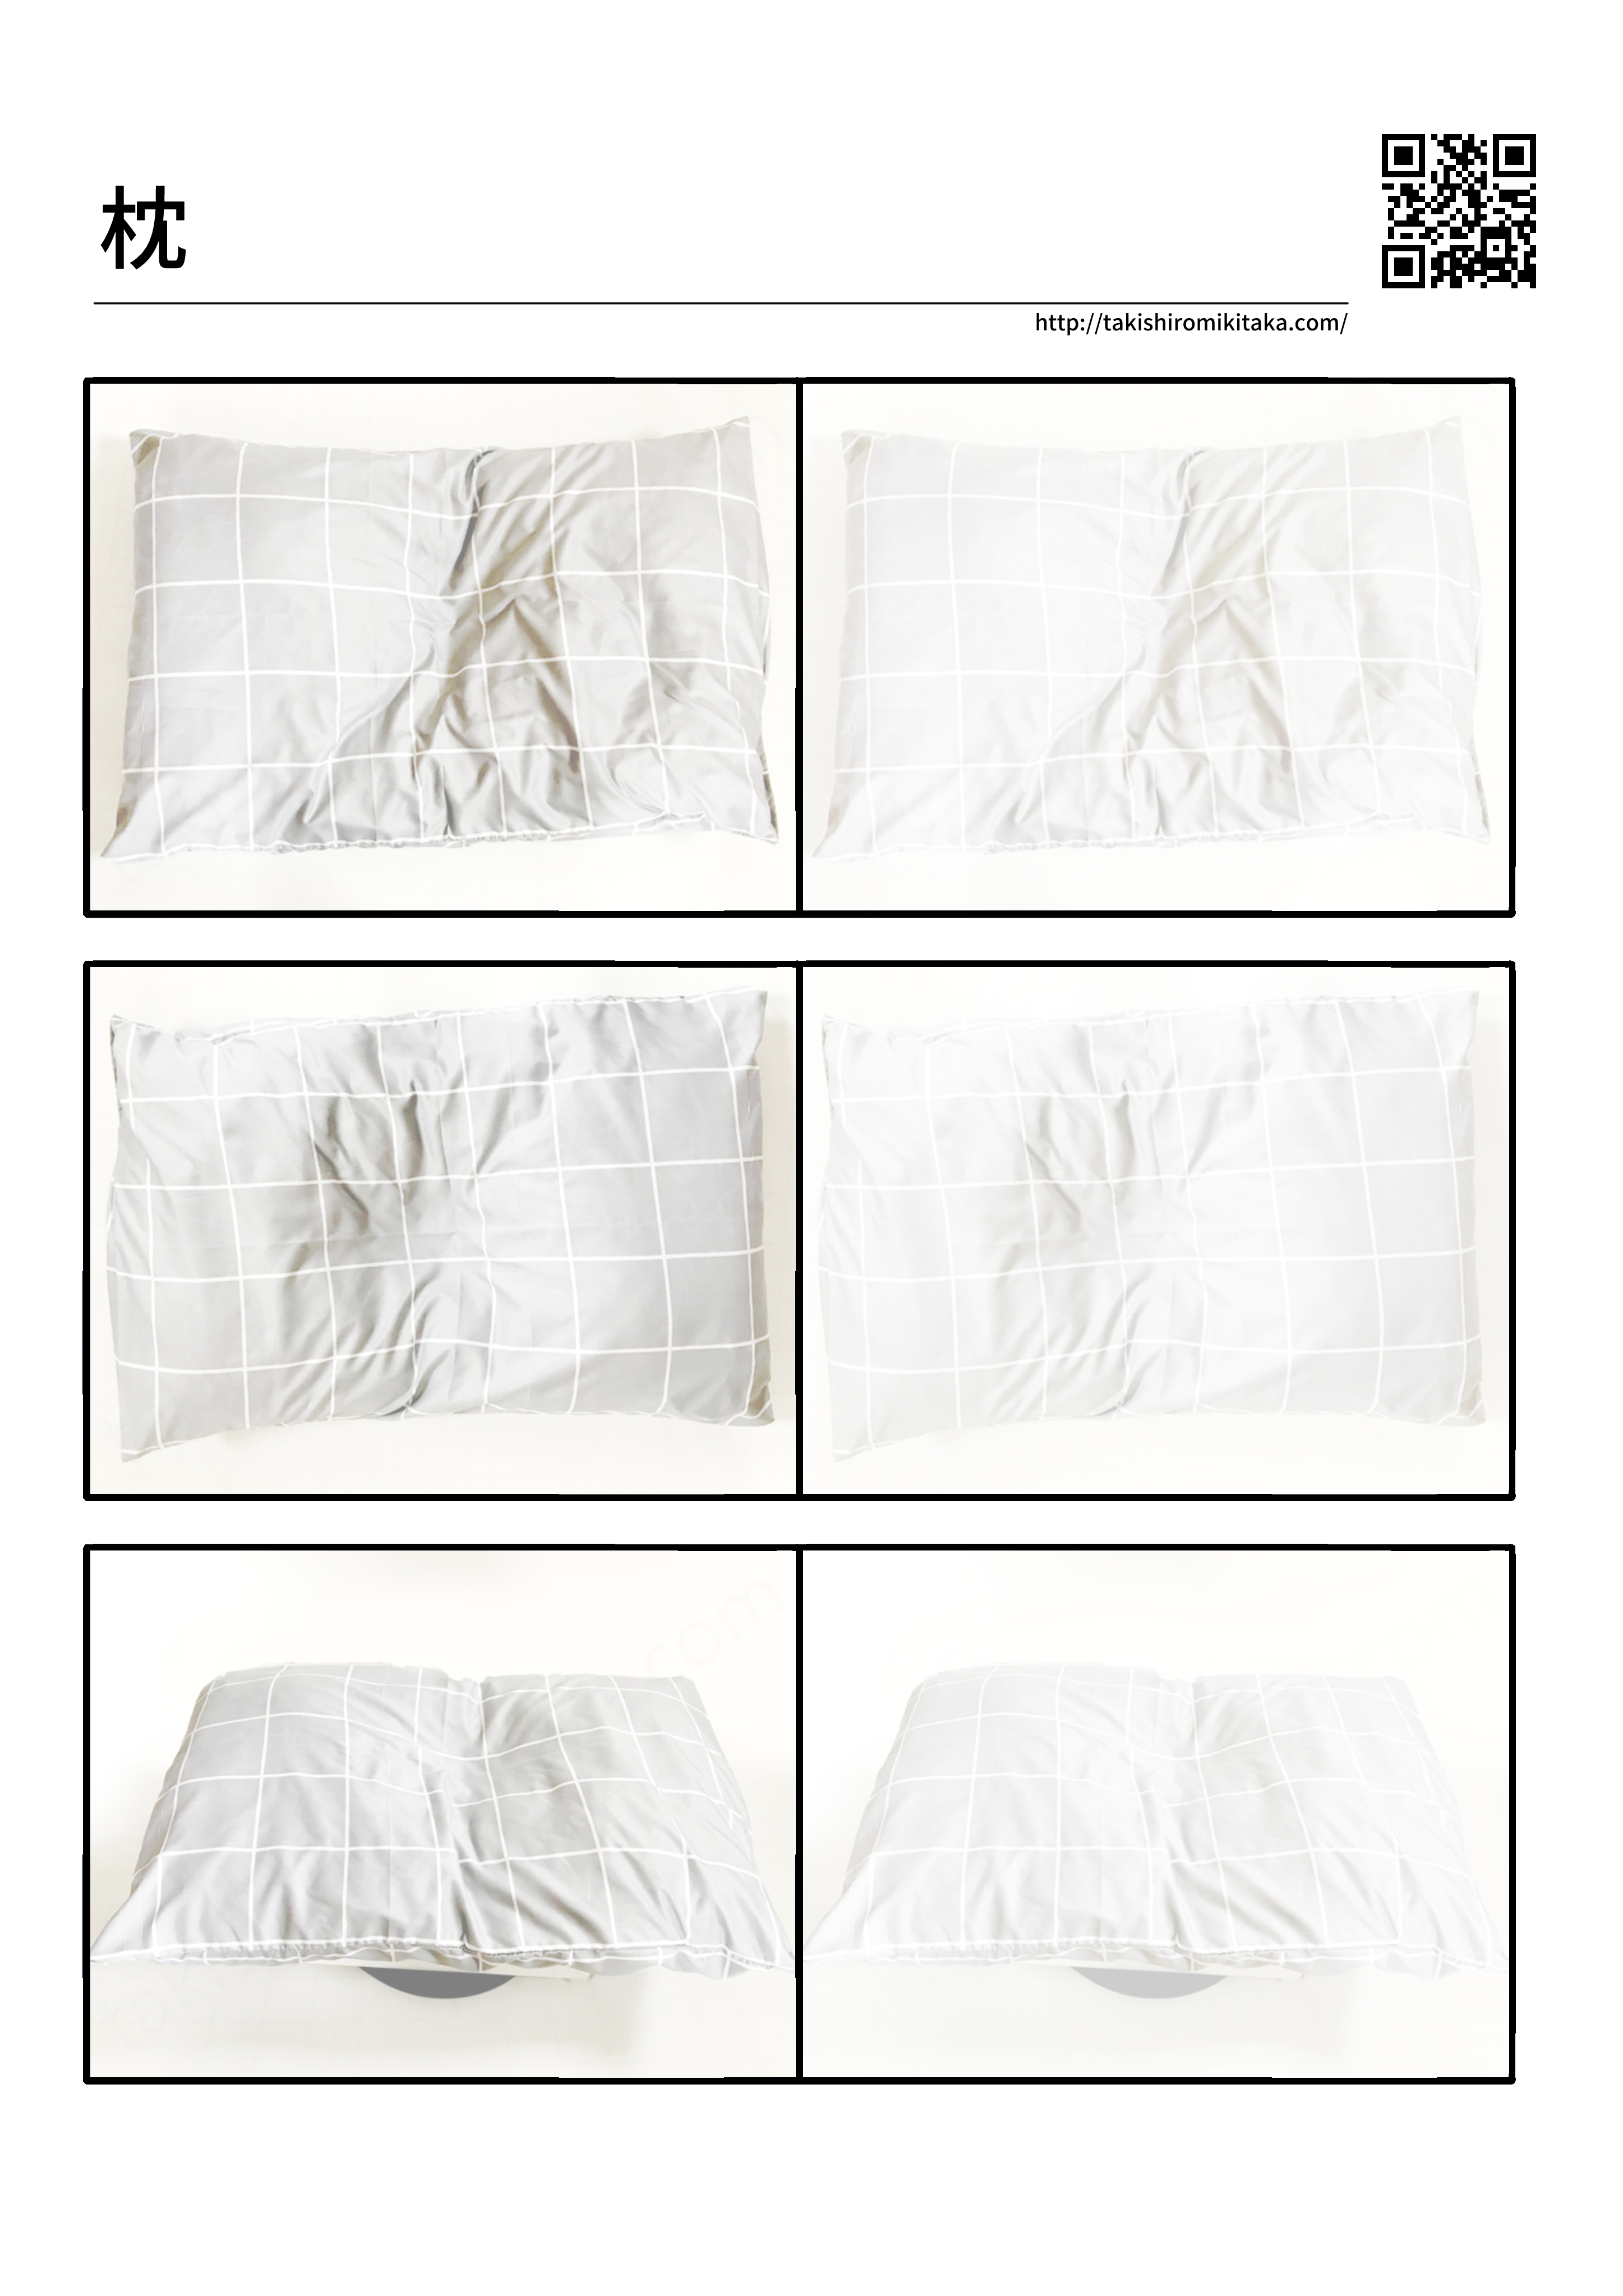 枕 の描き方 写真 線画 練習用印刷データ 滝城みきたか公式サイト